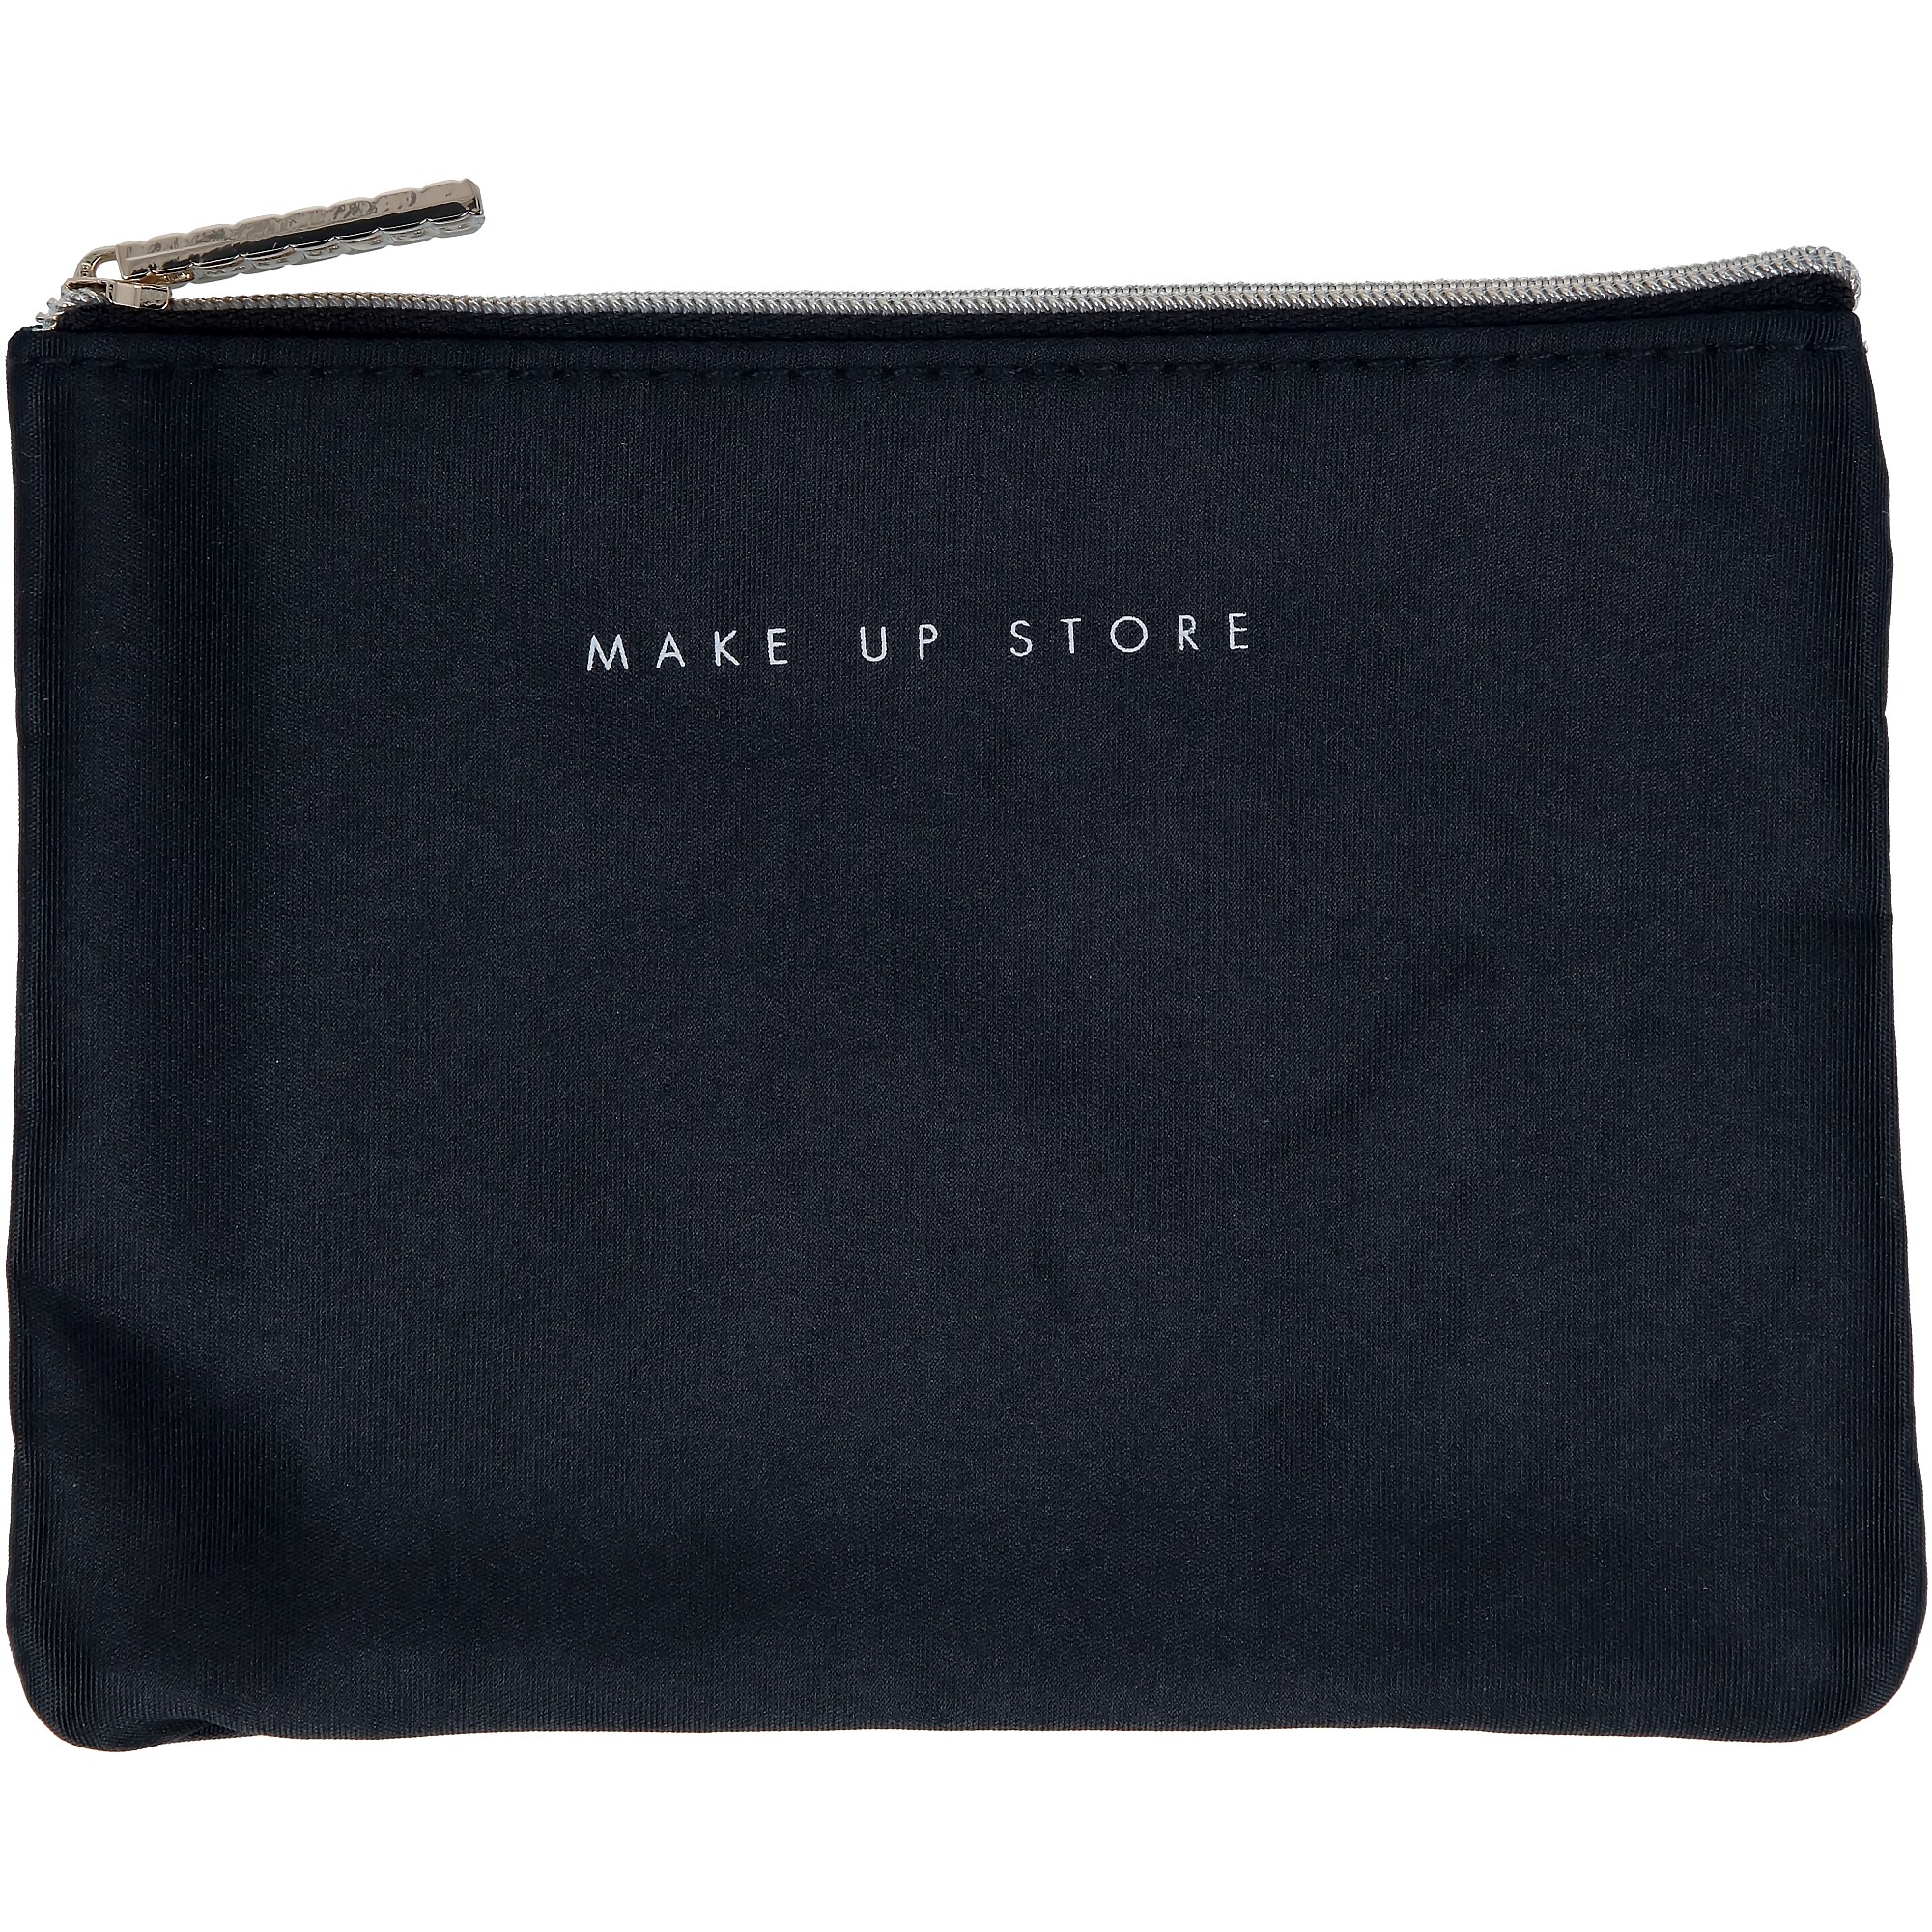 Bilde av Make Up Store Bag Elegant